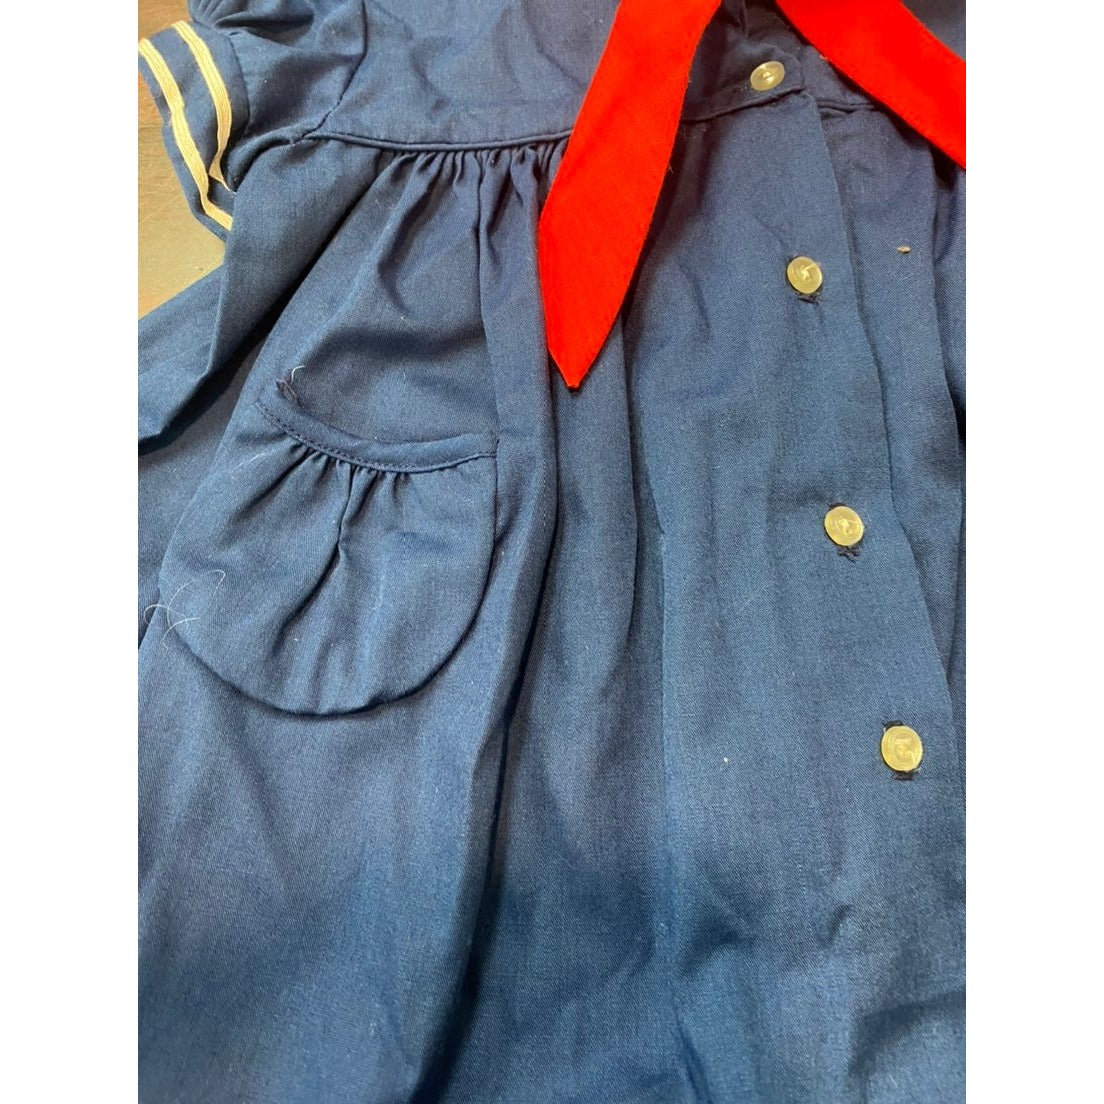 Vintage sailor Dress